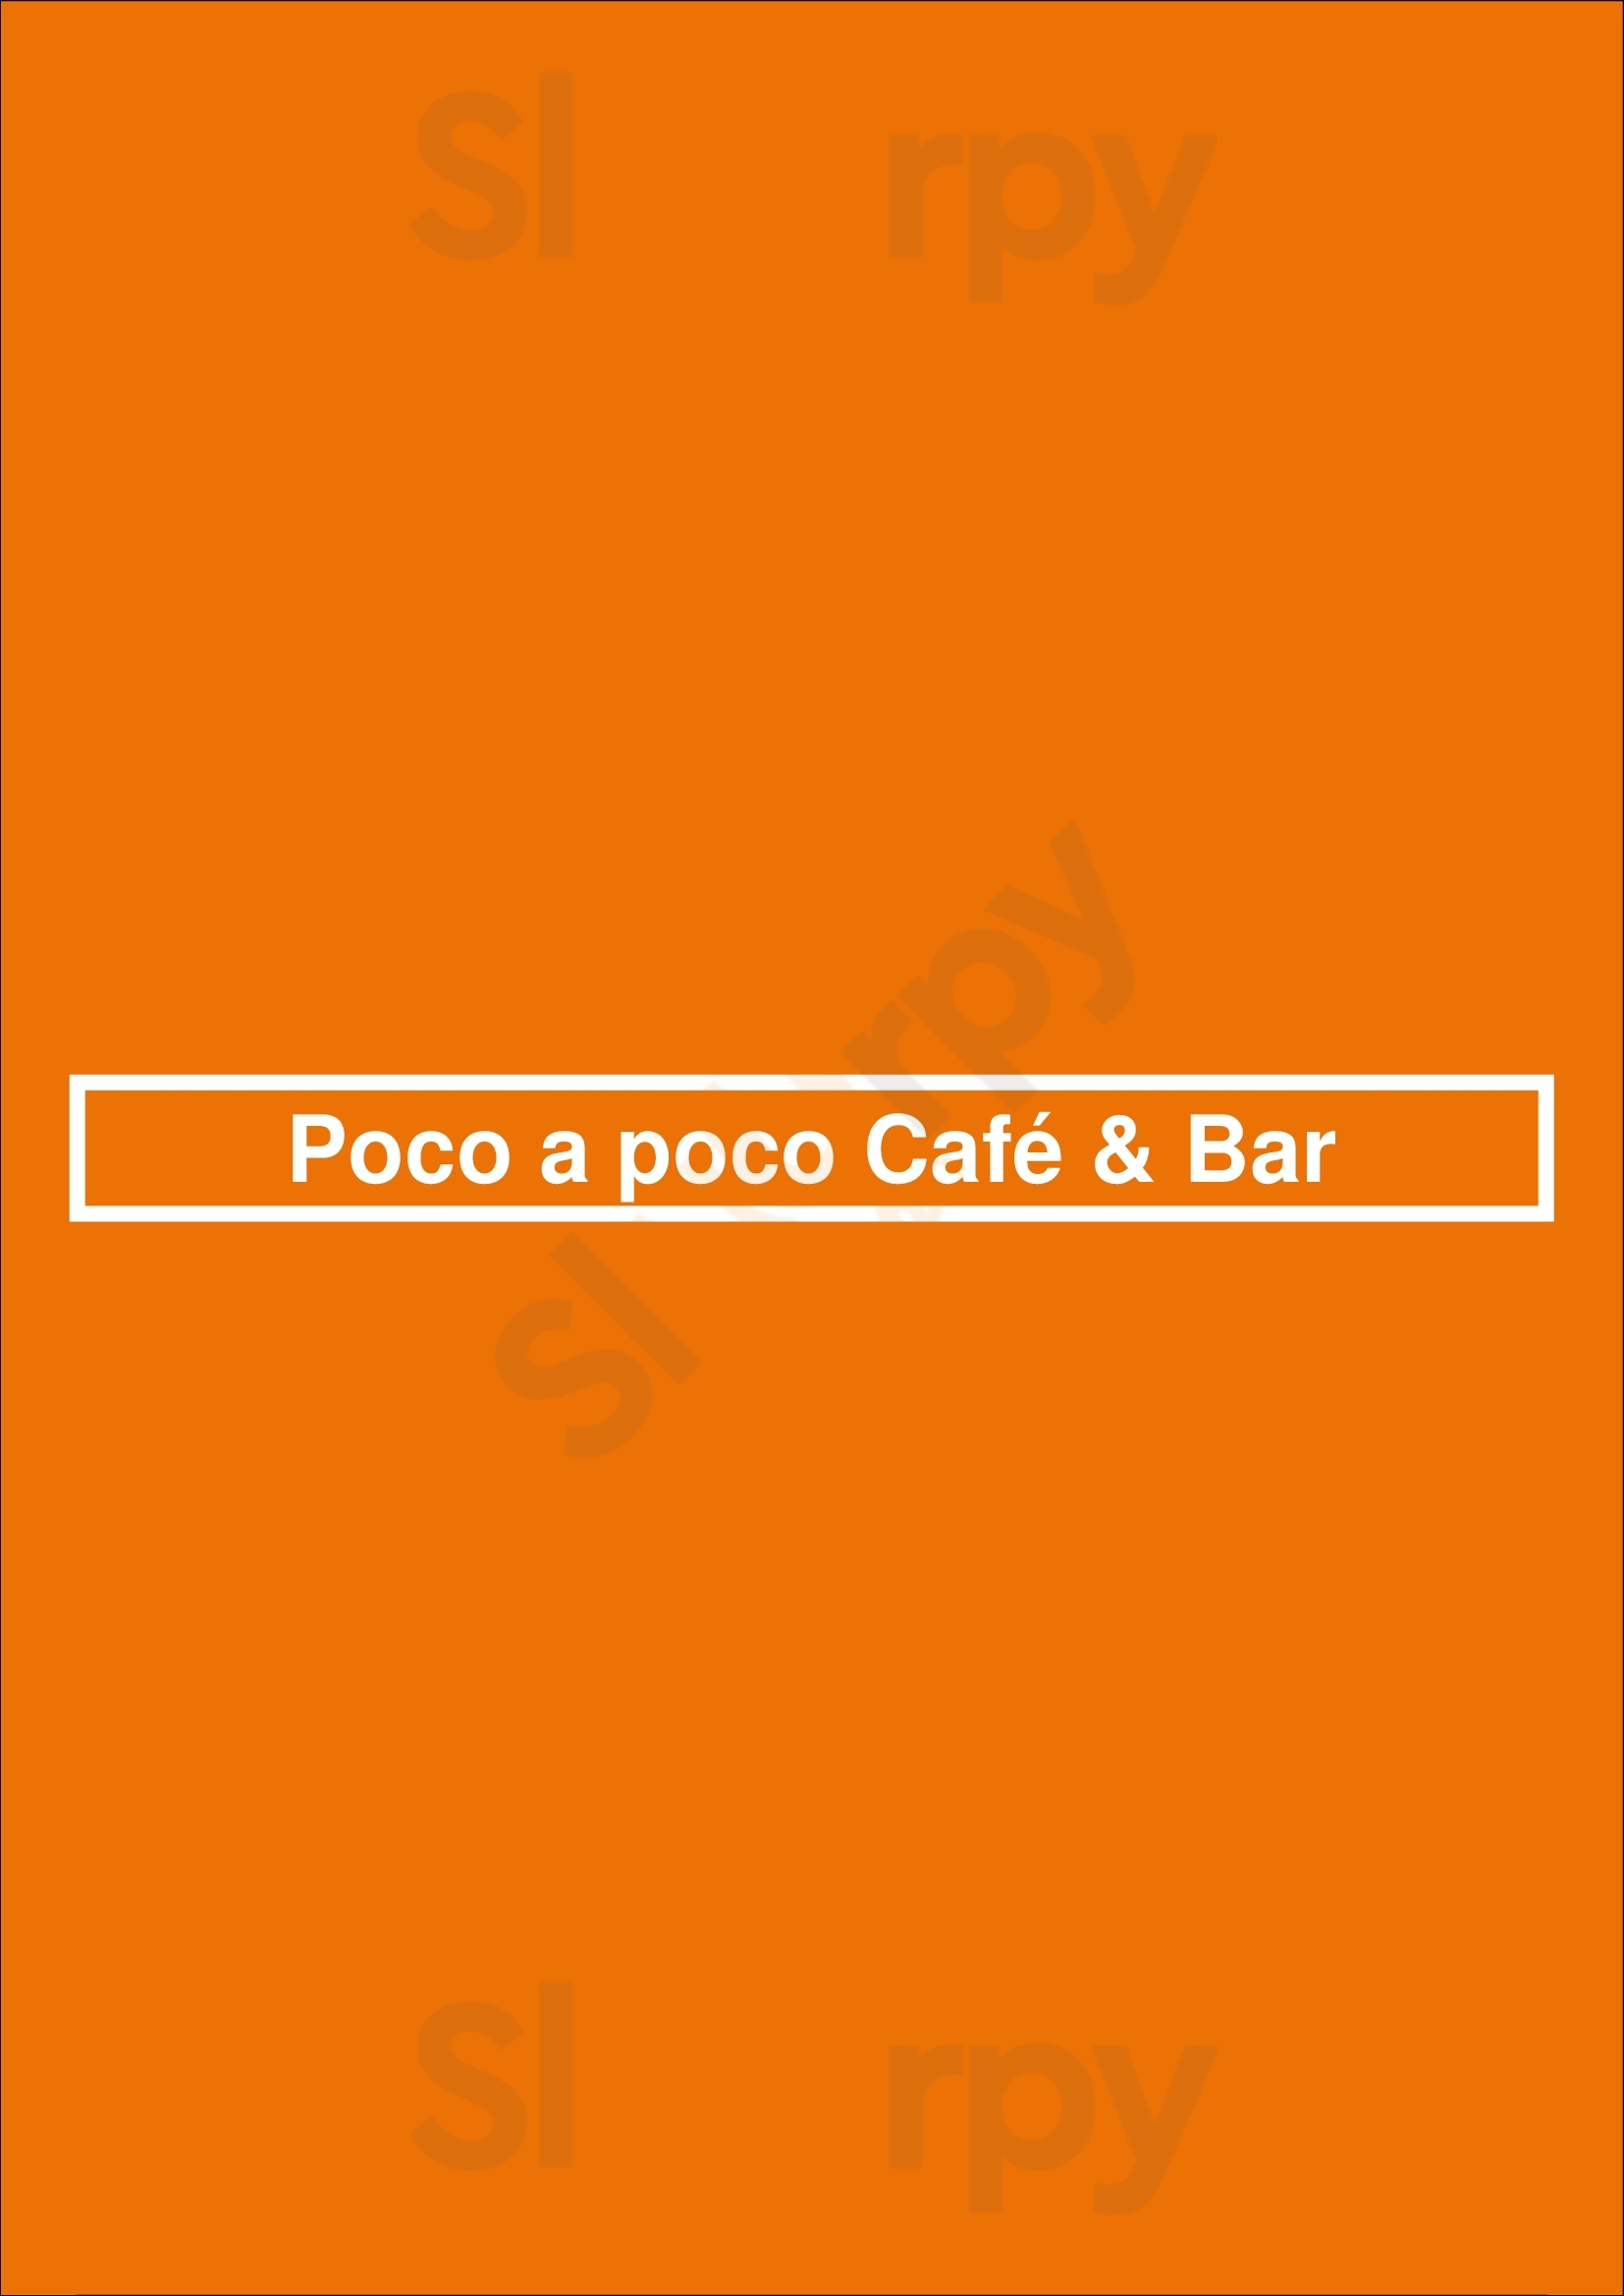 Poco A Poco Café & Bar Madrid Menu - 1